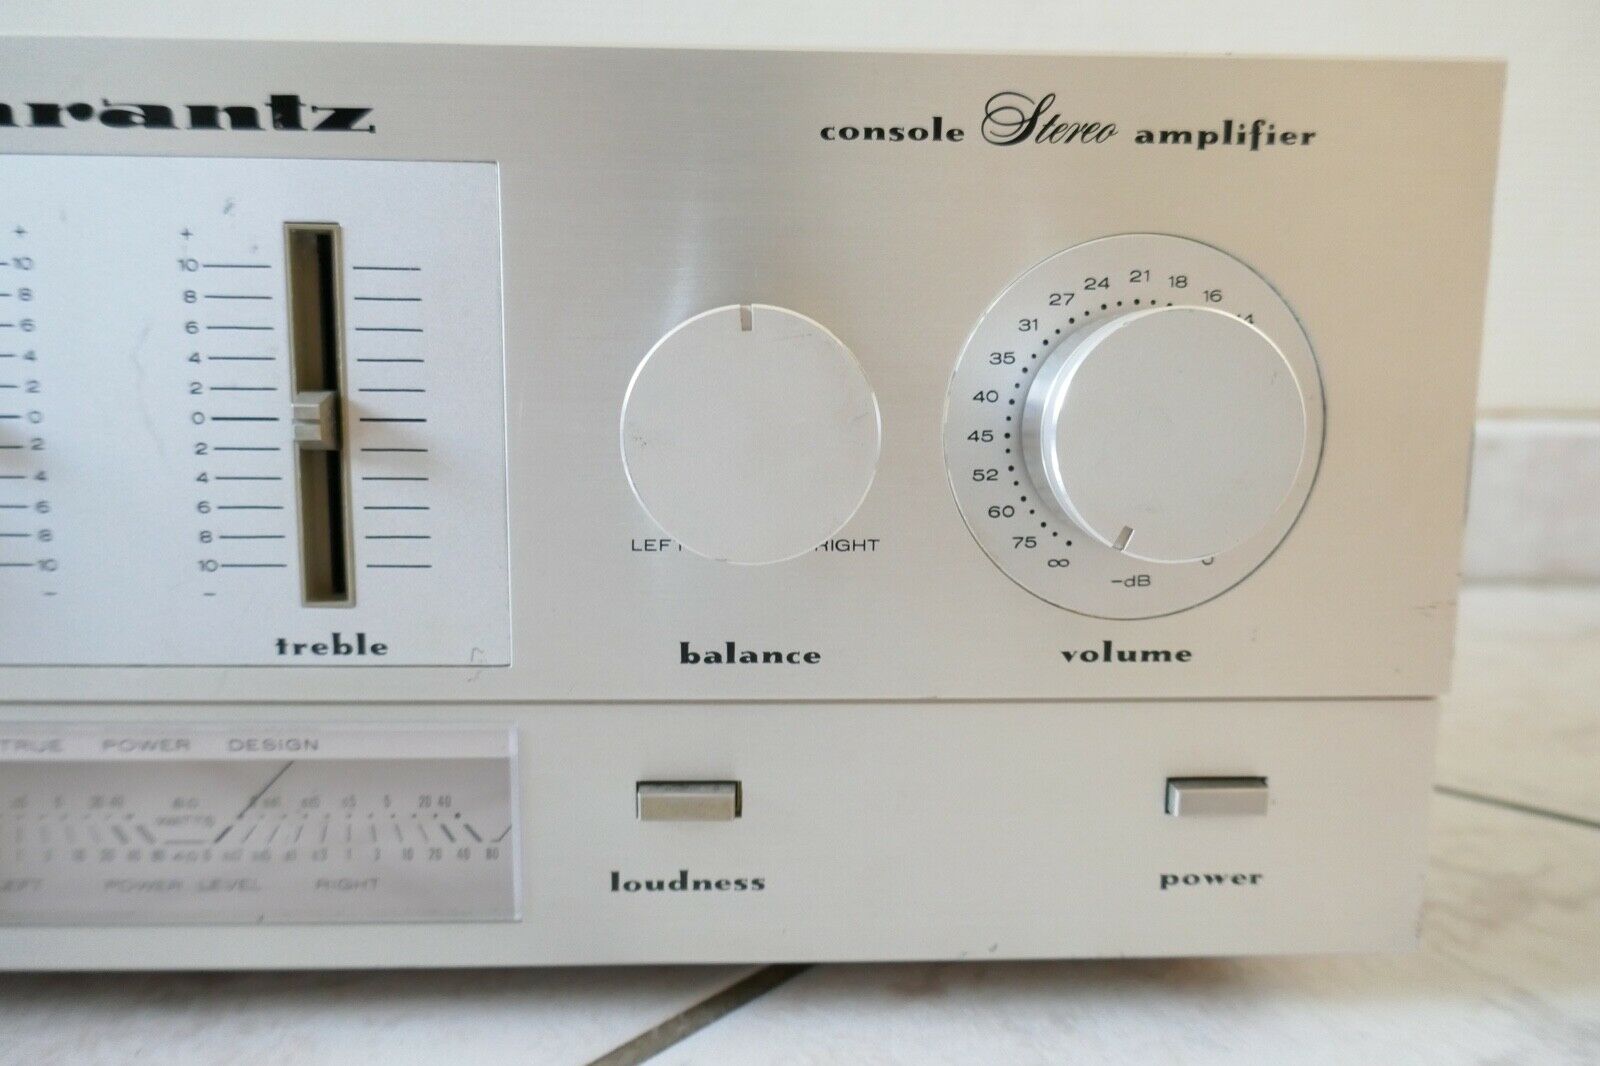 amplificateur amplifier marantz PM 200 vintage occasion